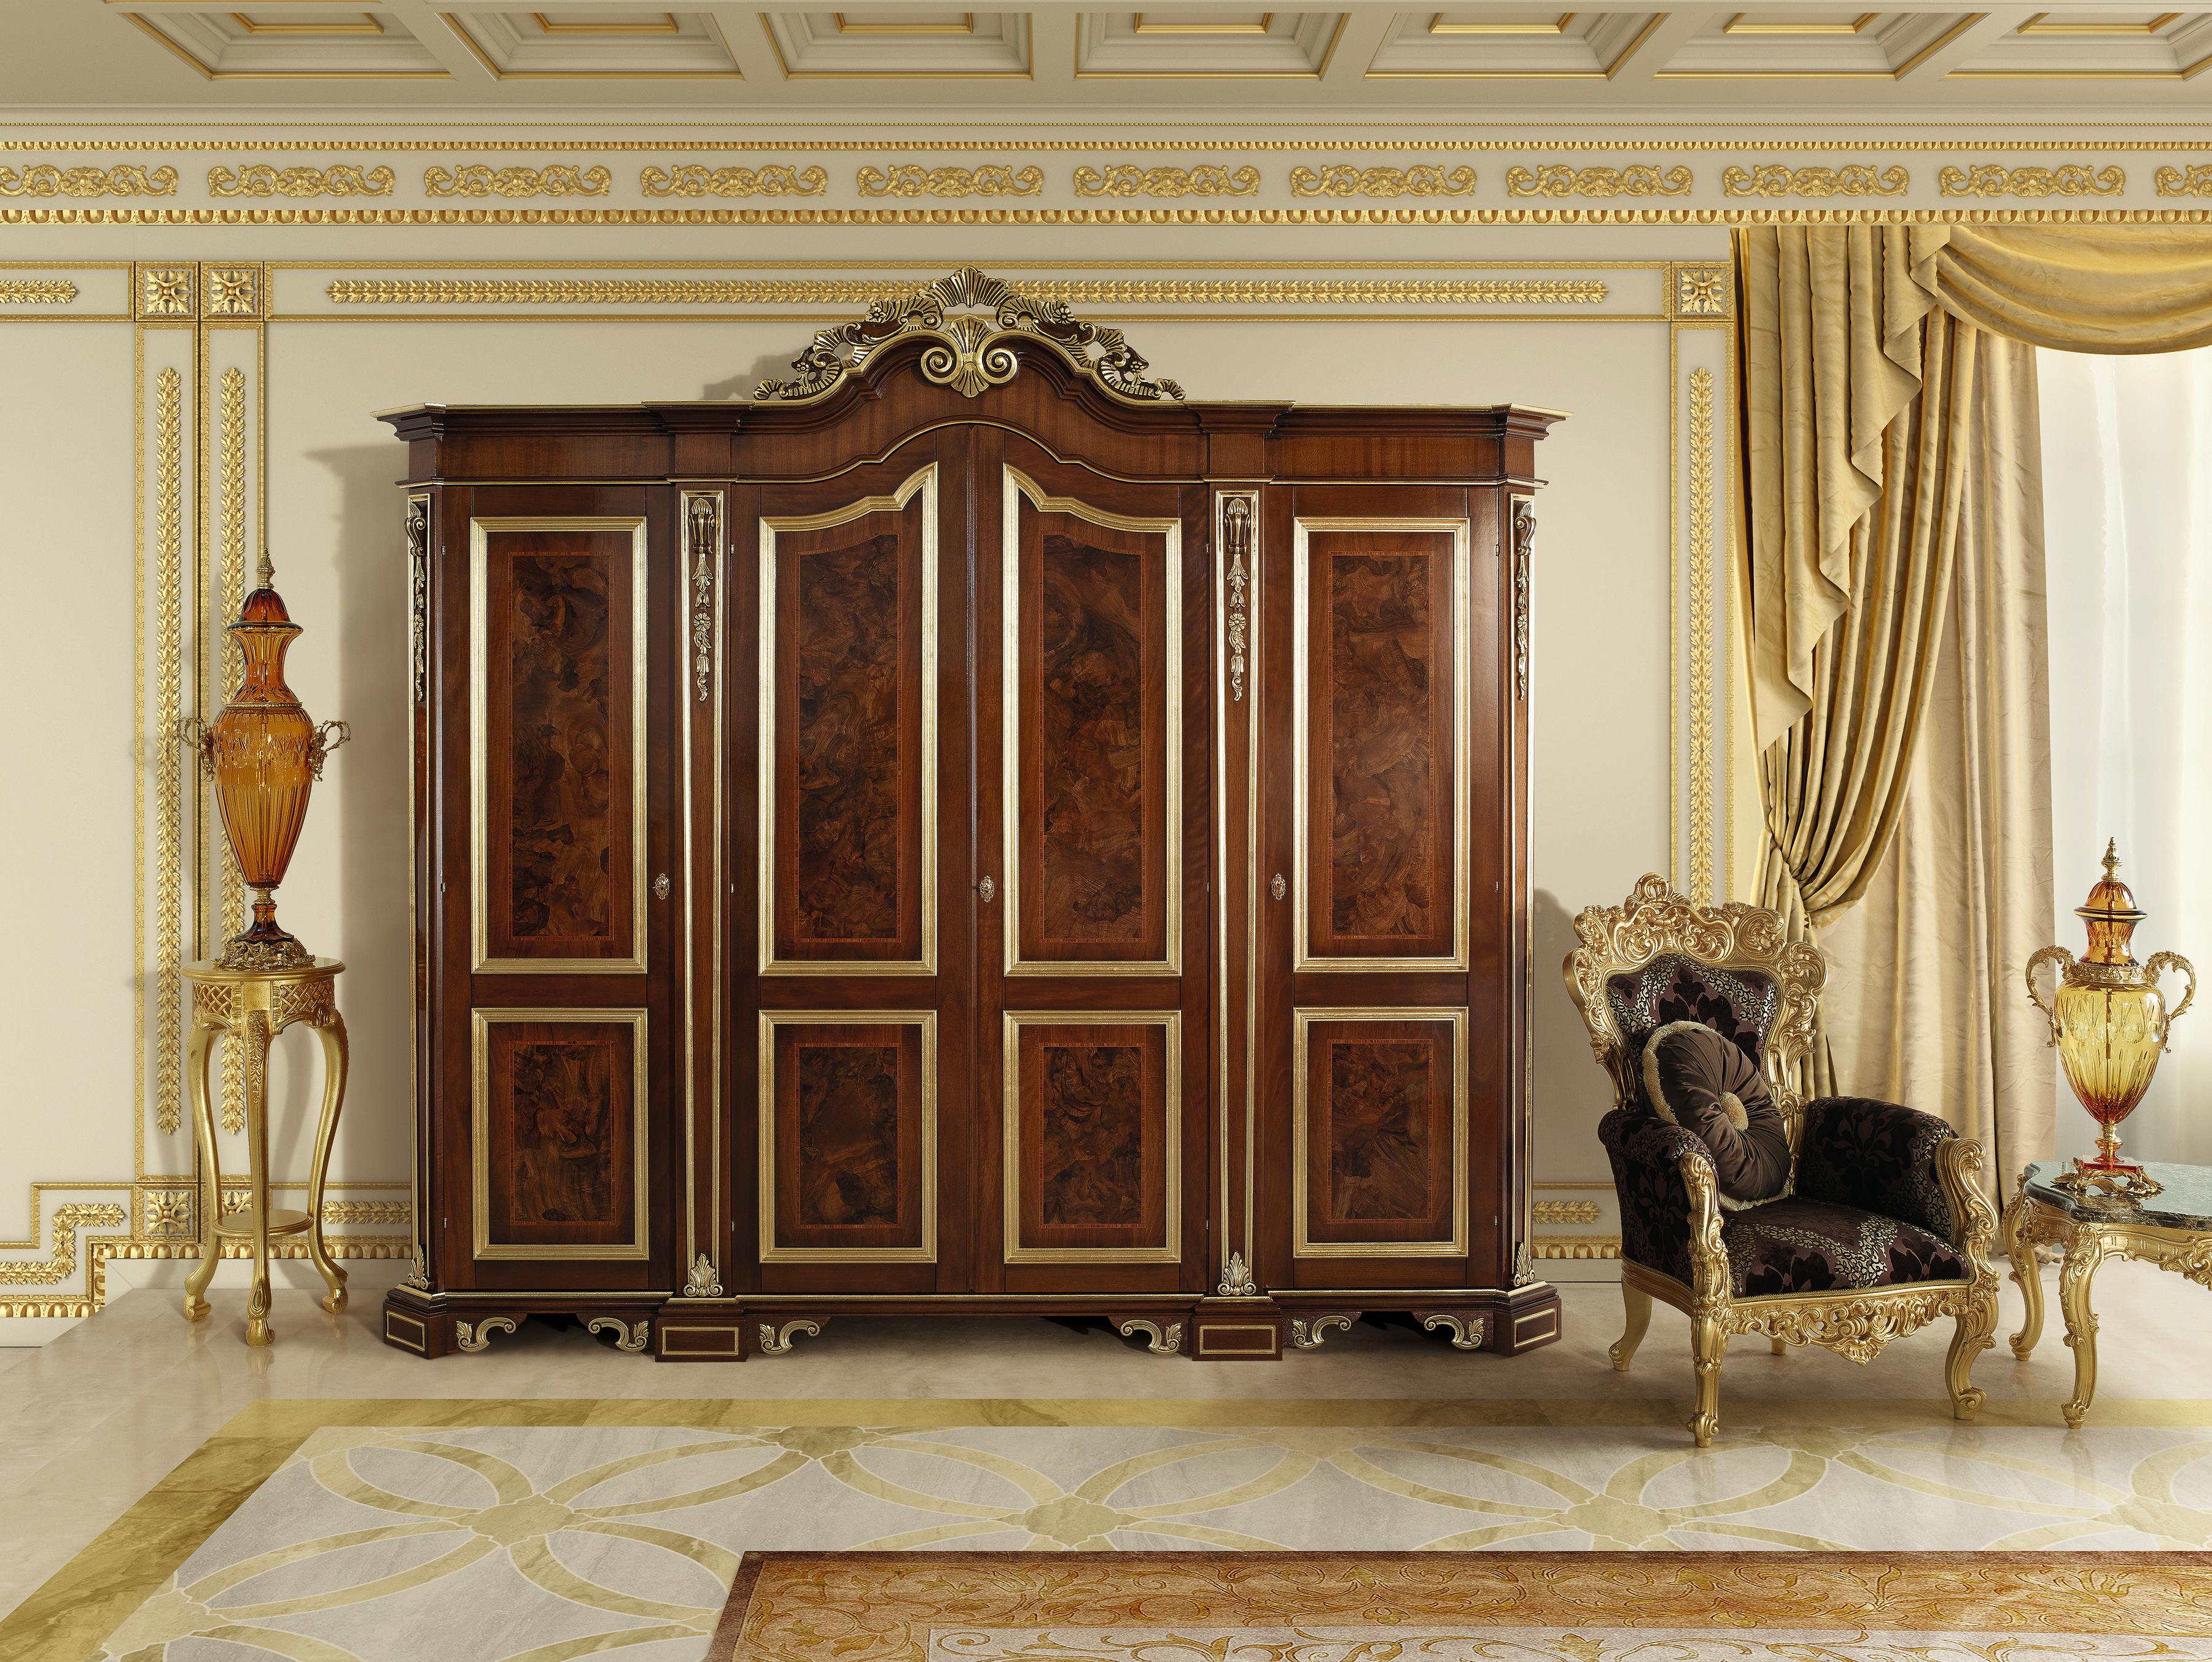 Fabriquée en bois massif avec des détails artisanaux et une finition laquée noyer, cette majestueuse commode à huit tiroirs de Modenese Luxury Interiors (Made in Italy) amplifie l'ambiance élégante et intemporelle de votre pièce. 

De précieux